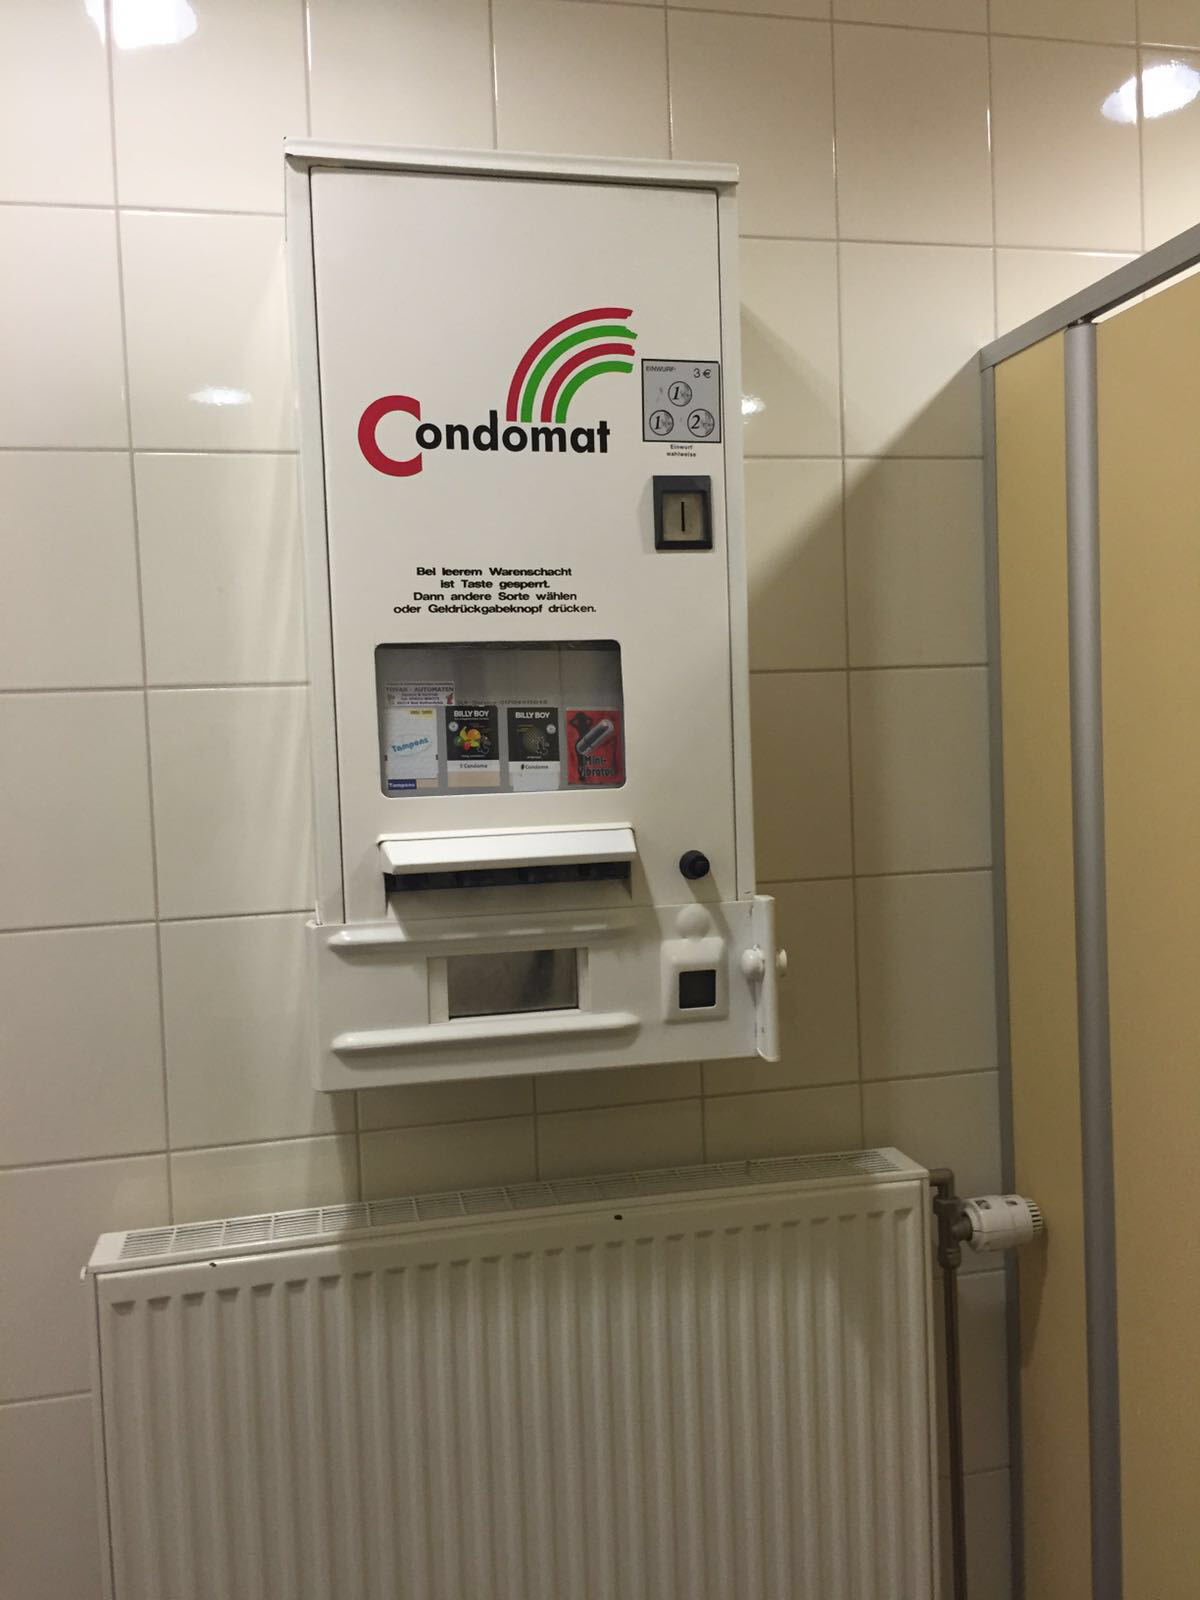 コンドーム バイブ自販機 アウトバーンサービスエリア Nederlanden